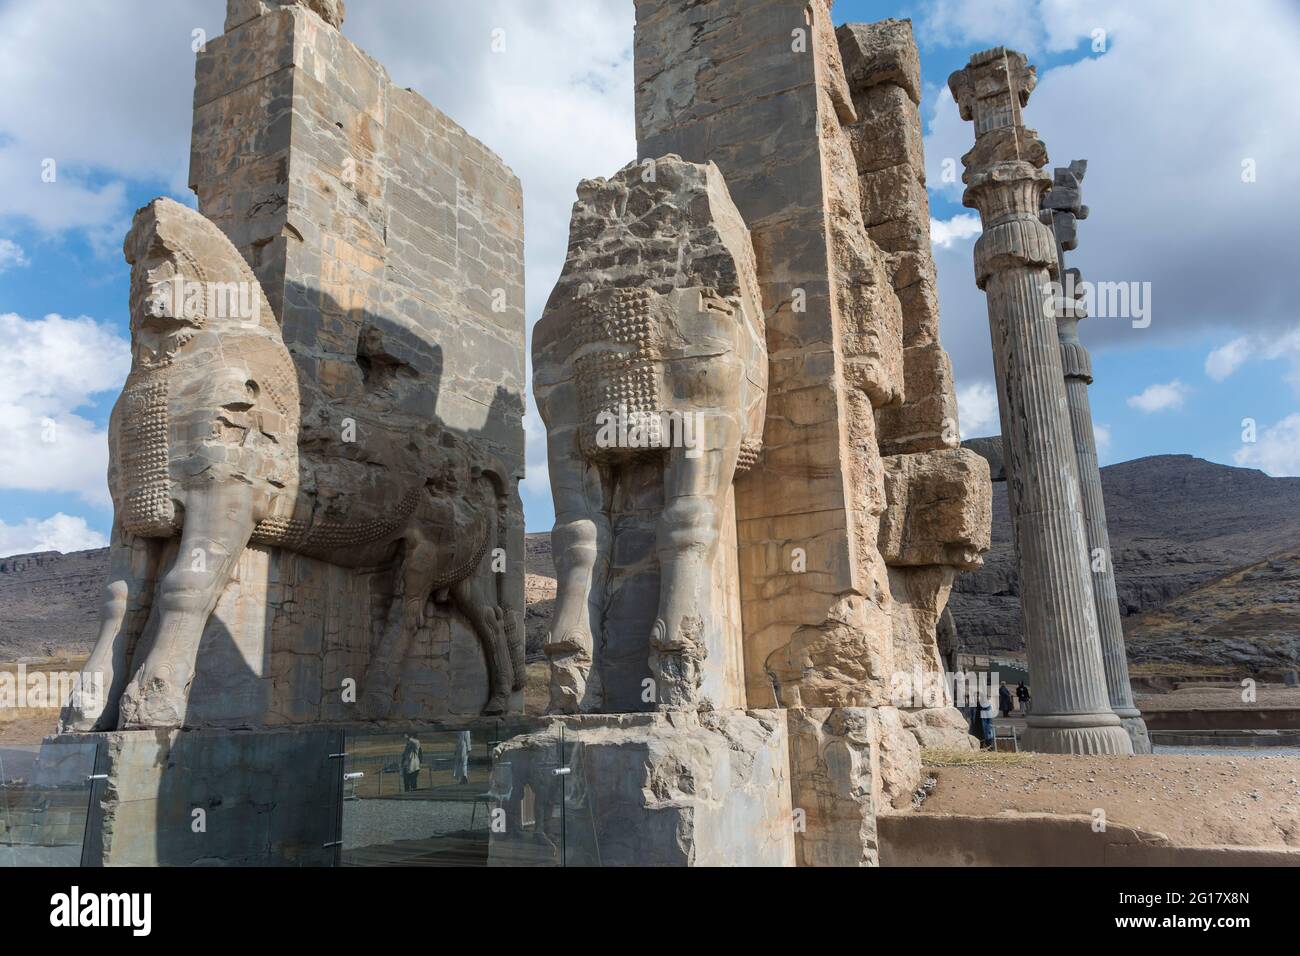 Ruines de la porte de toutes les nations (porte de Xerxès), Persepolis, province de Fars, Iran Banque D'Images